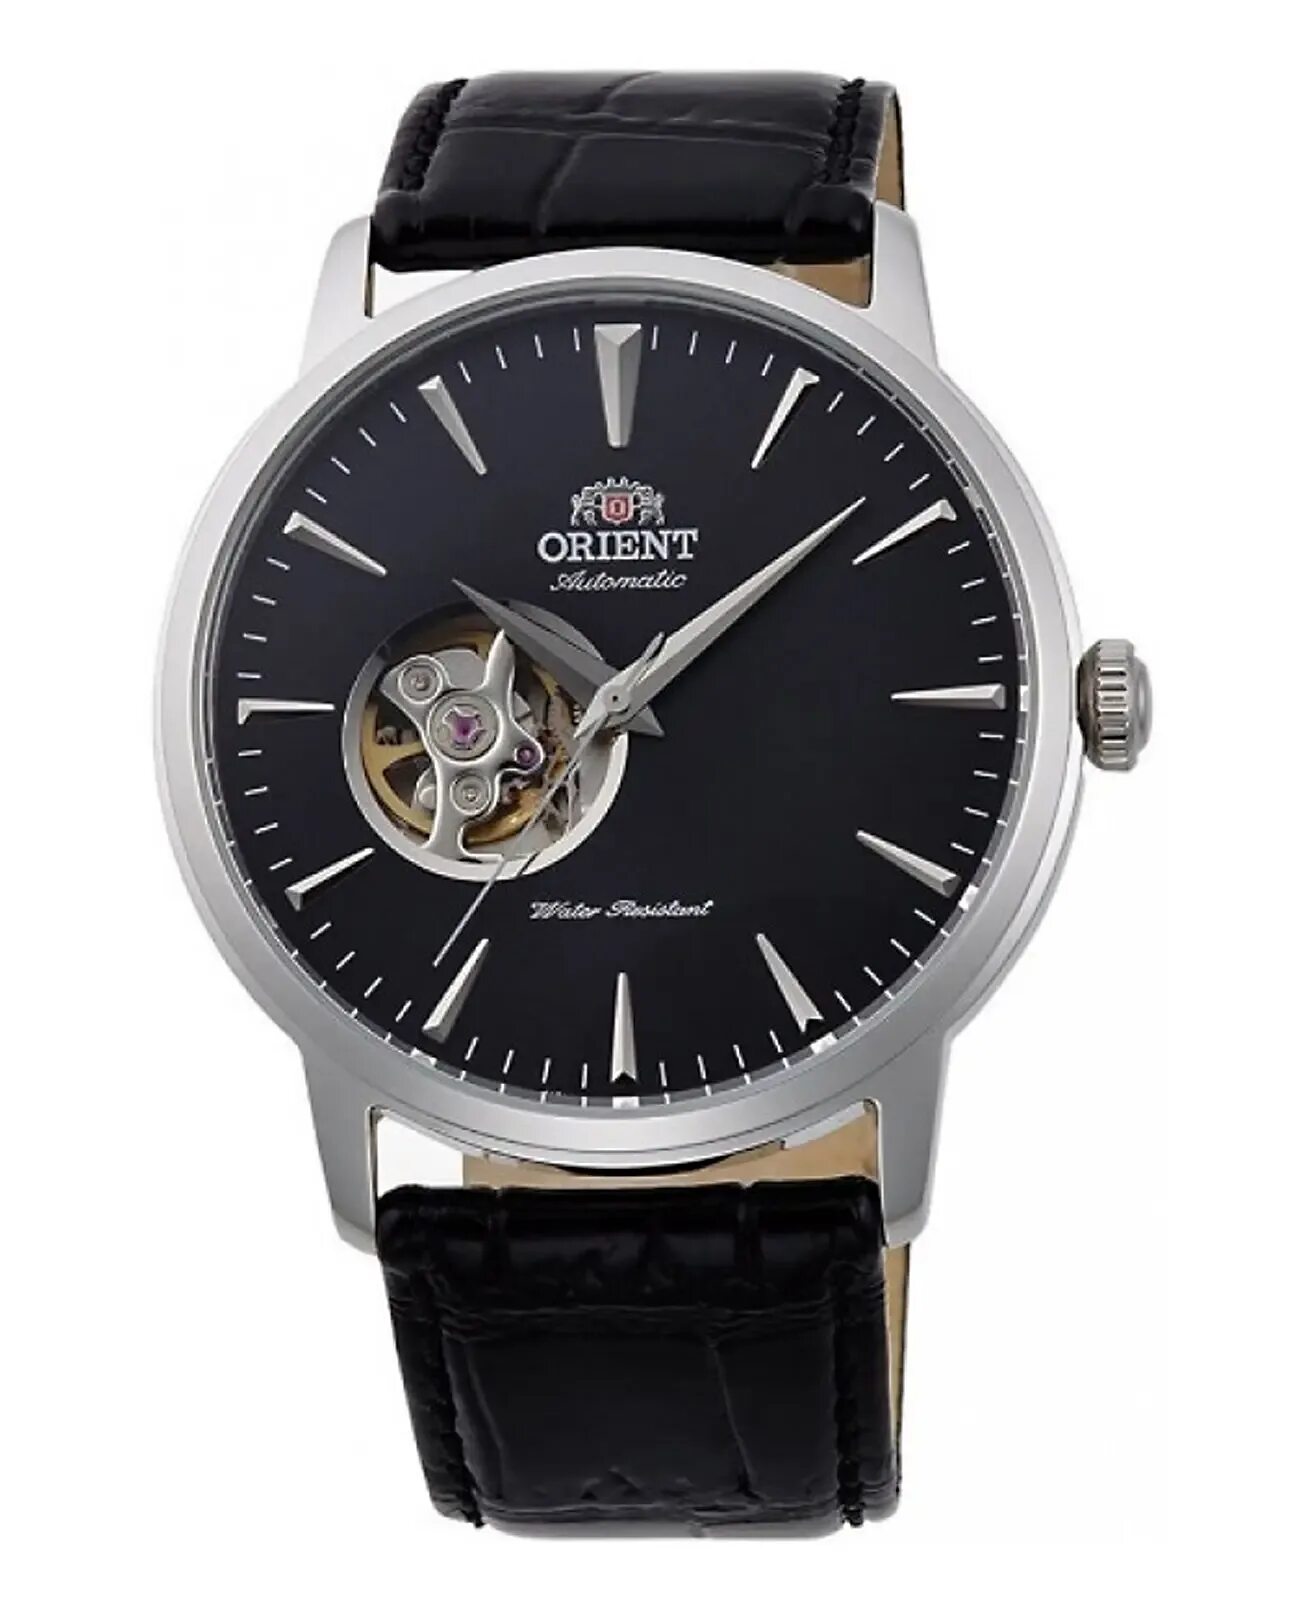 Часы Orient ag02004b. Часы Orient Automatic мужские. Механические часы Orient Automatic. Наручные часы Orient dw08004b. Японские часы с автоподзаводом